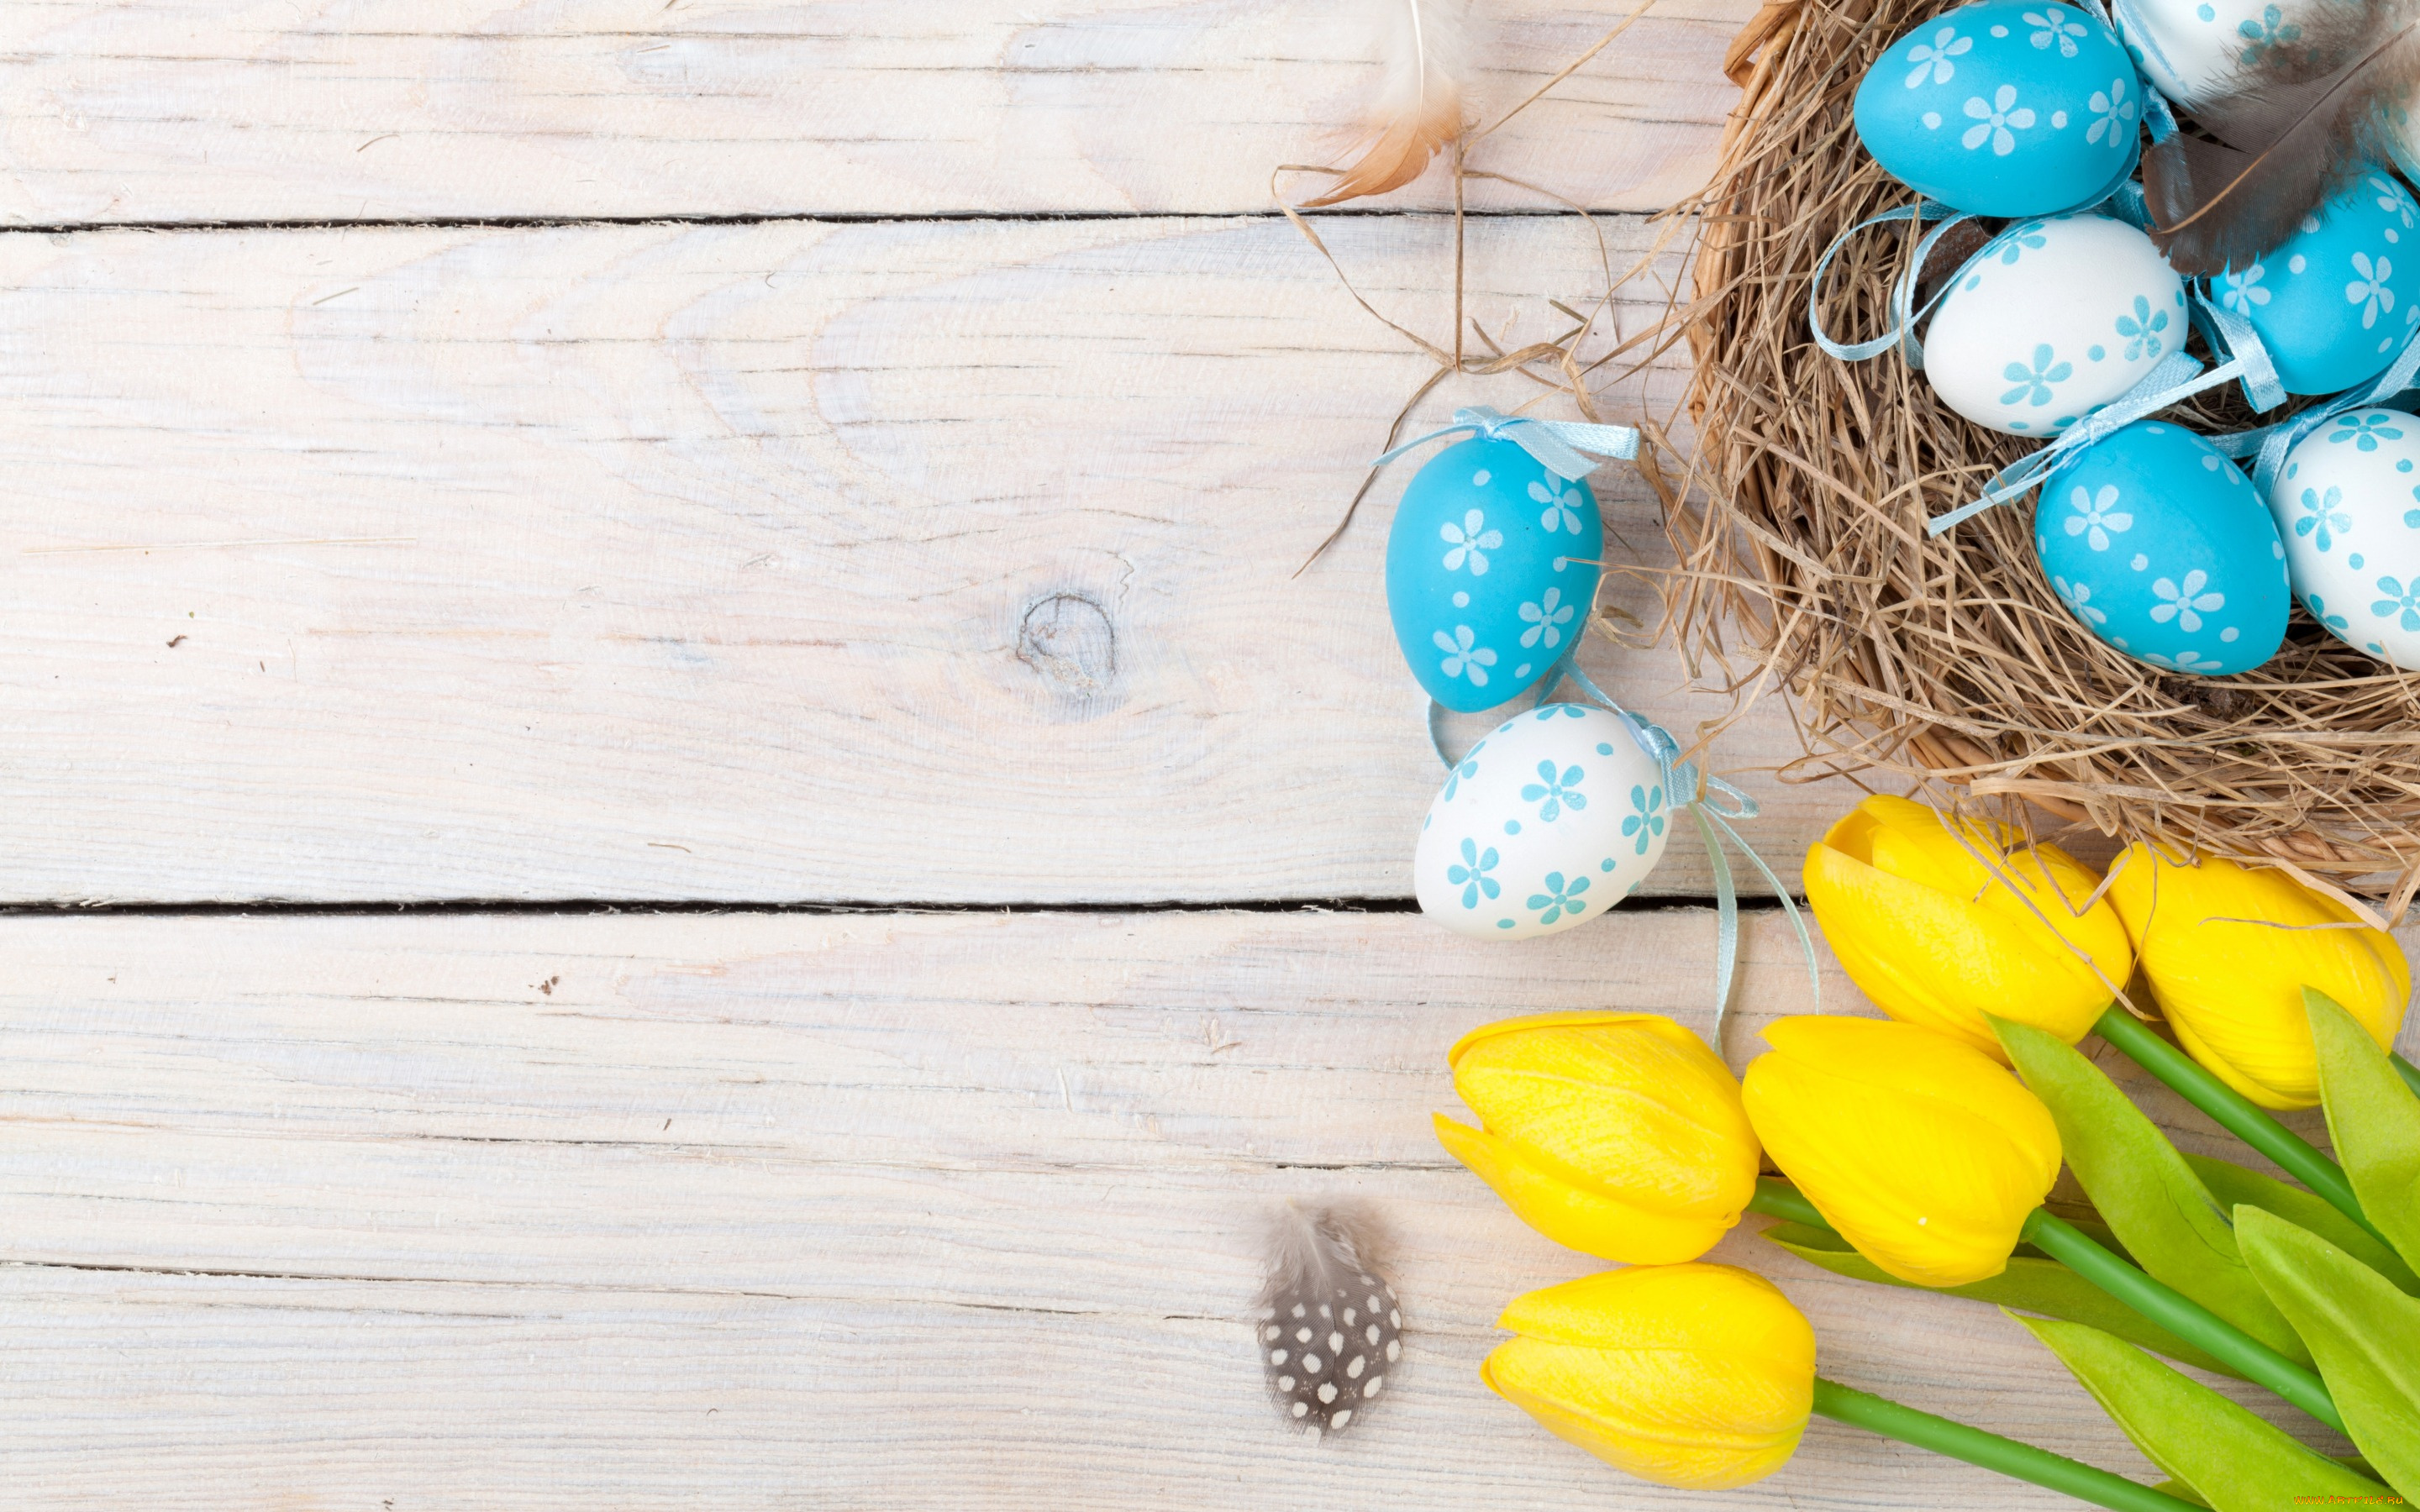 праздничные, пасха, decoration, wood, easter, тюльпаны, tulips, tender, yellow, happy, spring, eggs